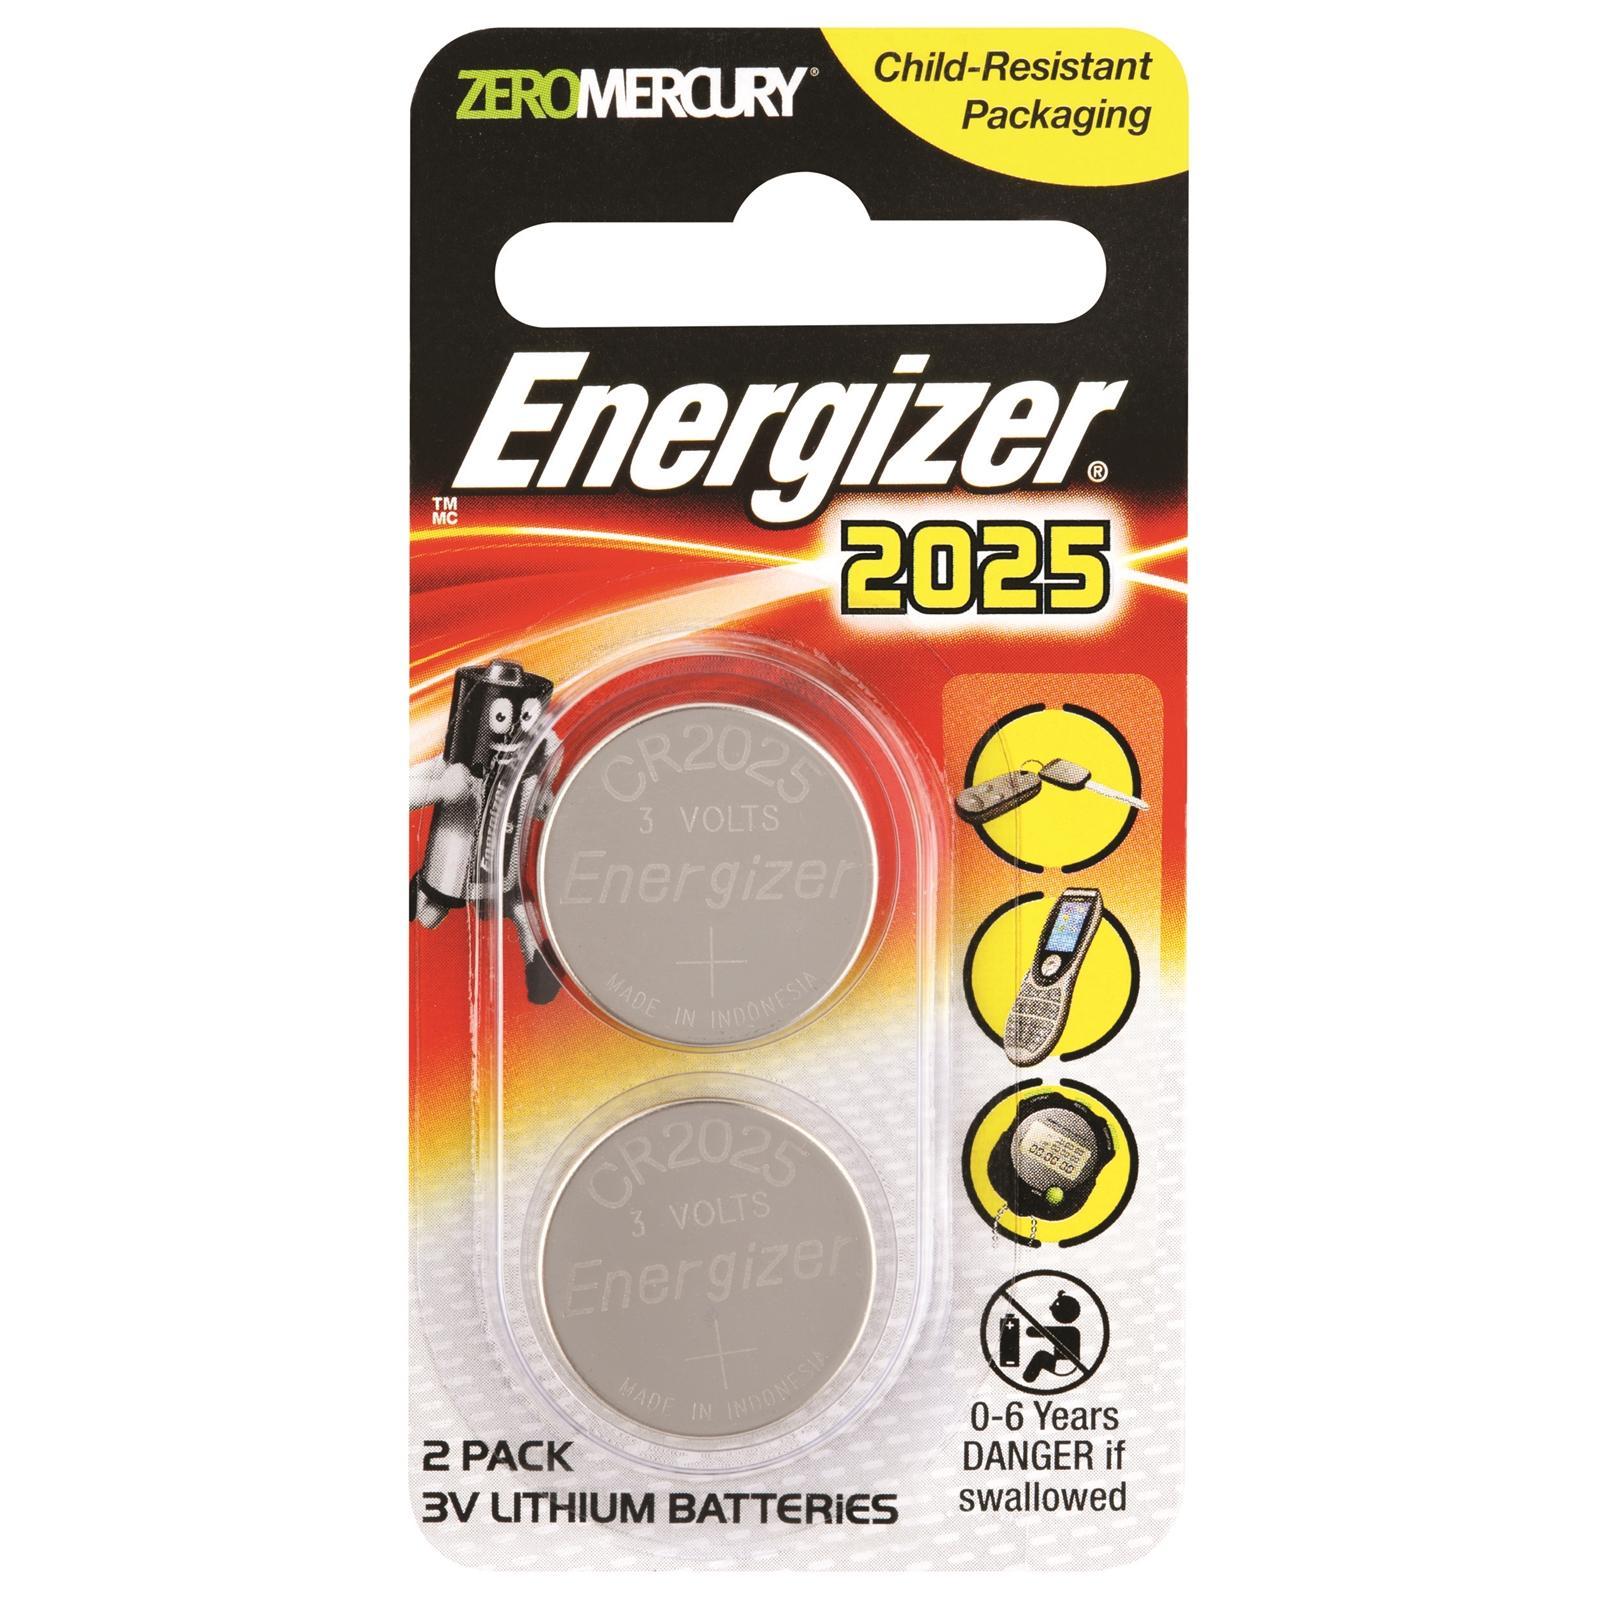 Energizer CR2025 3V Lithium Coin Batteries Zero Mercury 2 pcs 1 pack –  Mavens Collection